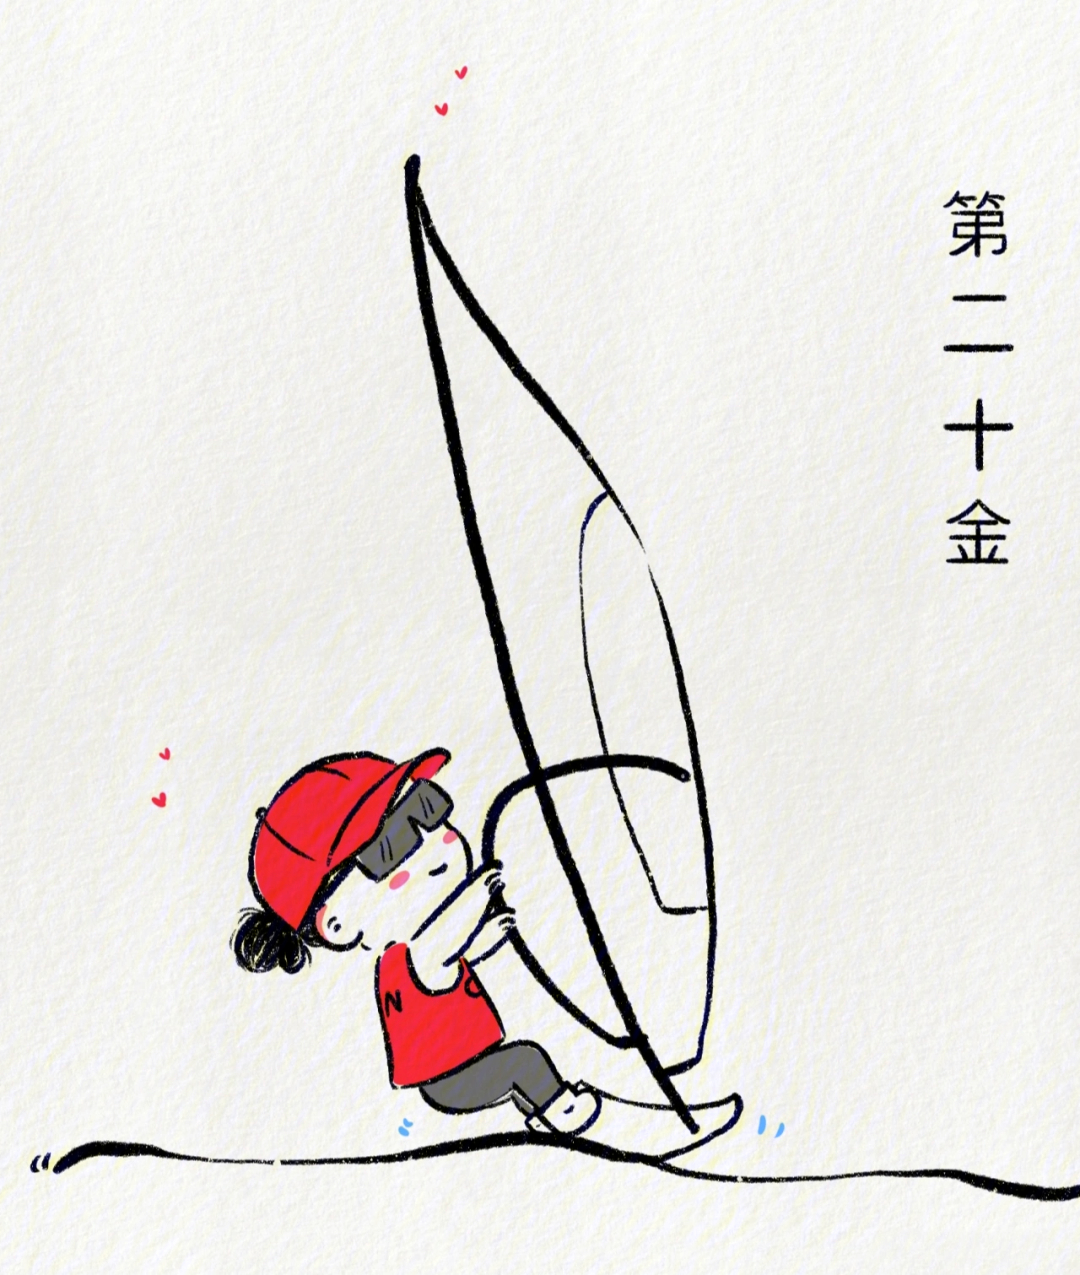 中国东京奥运会简笔画图片